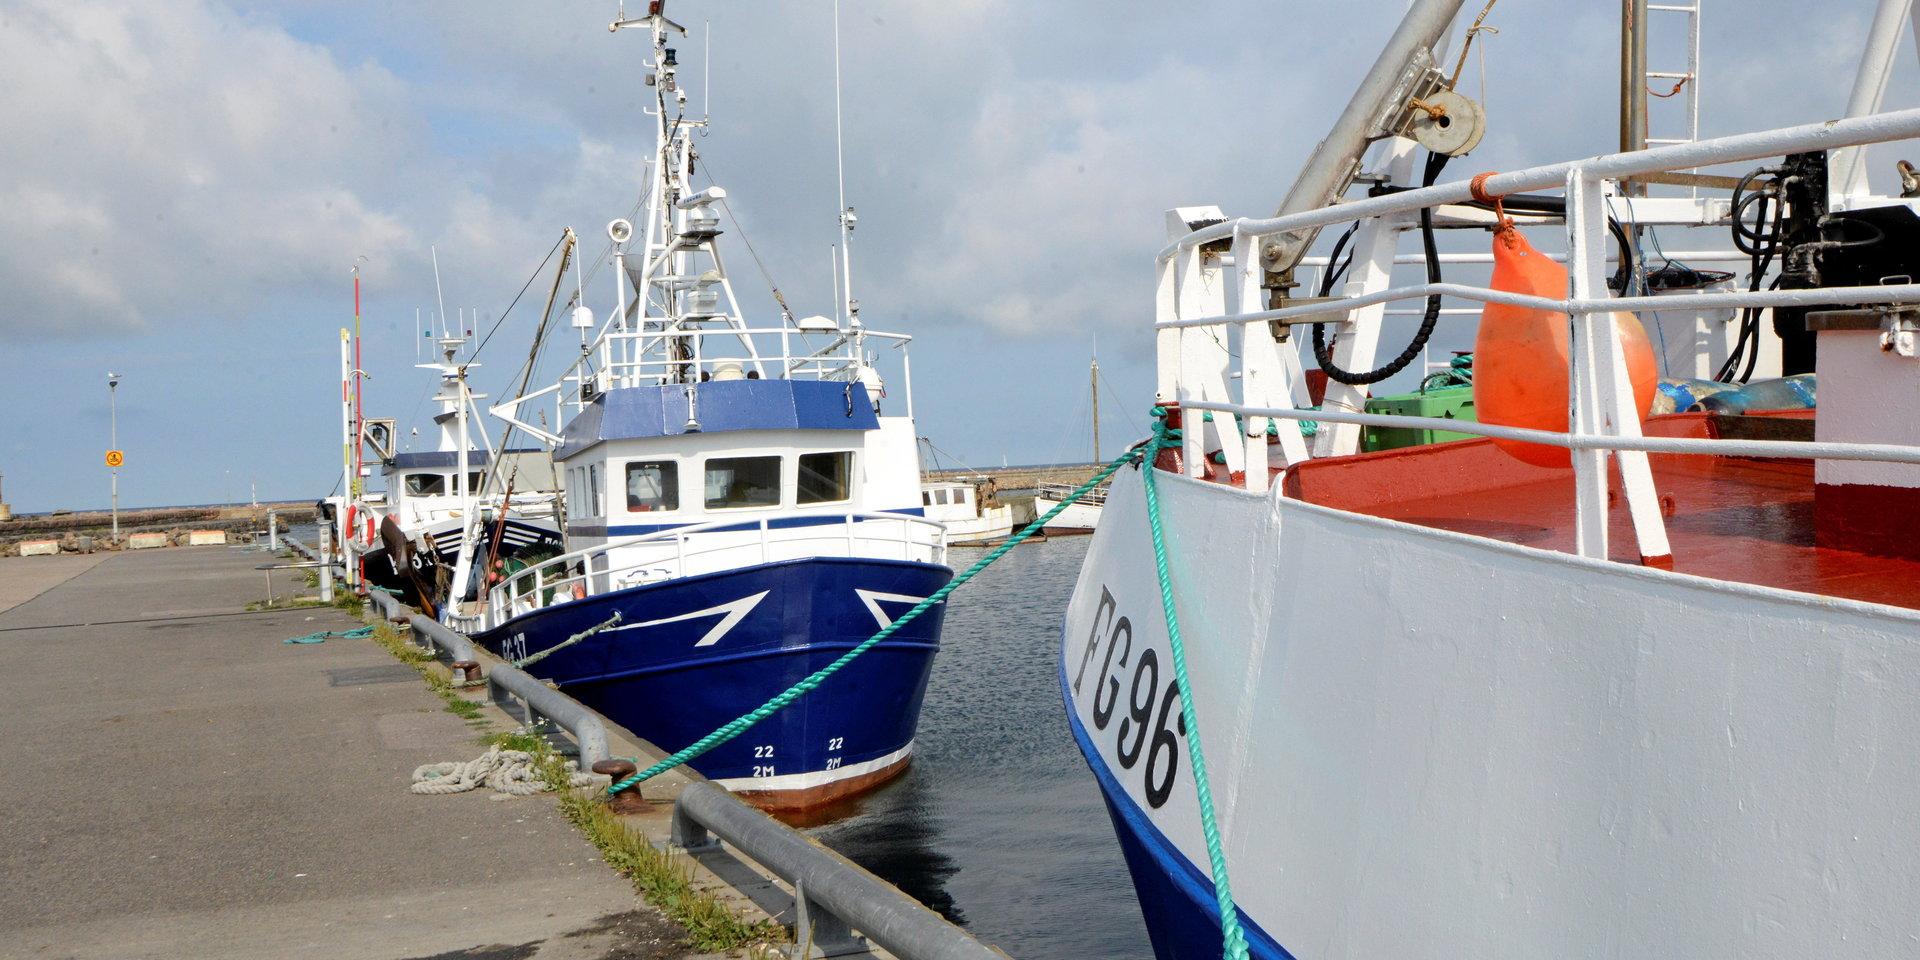 Vilka nya arbetstillfällen som kan ersätta det som försvunnit från fiskenäringen? skriver insändarskribenten.